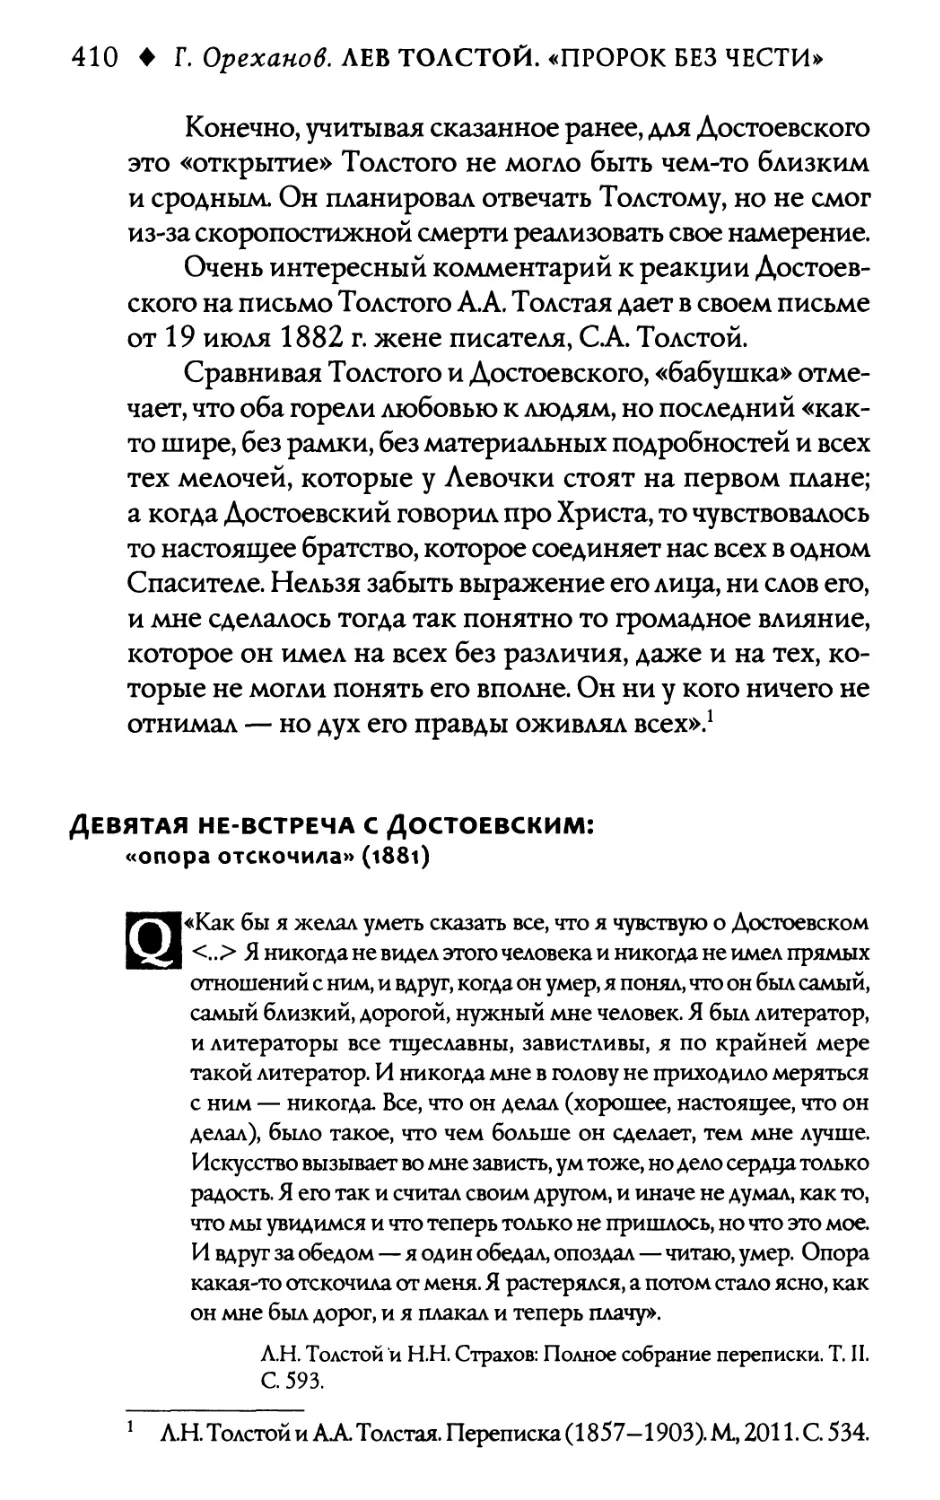 Девятая не-встреча с Достоевским: «Опора отскочила»